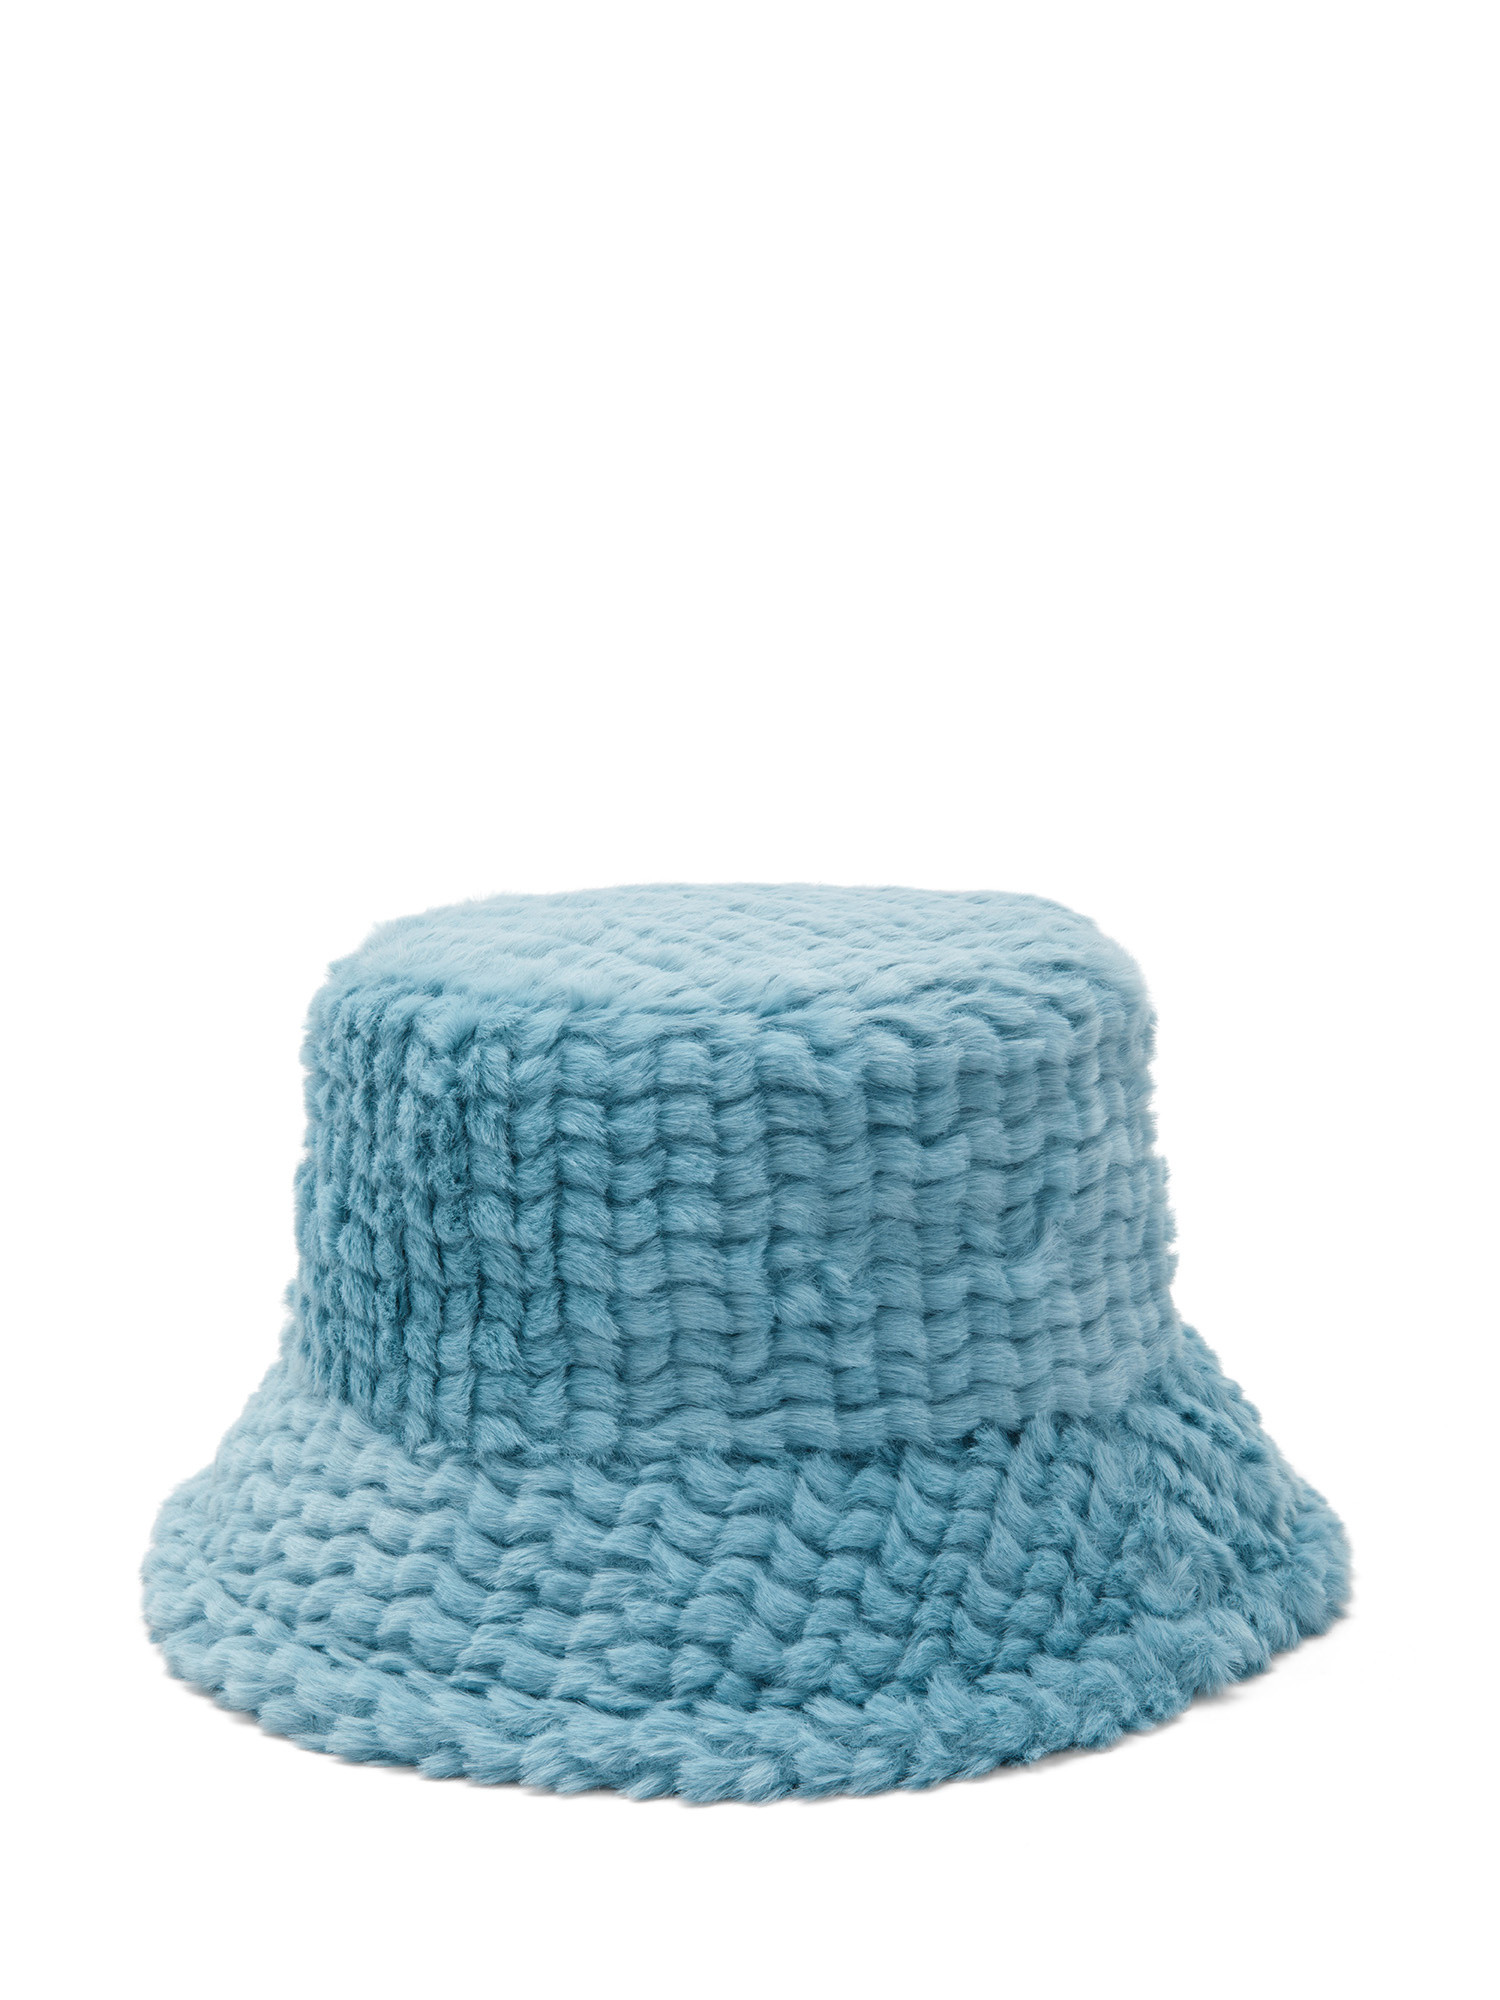 Koan - Hat in faux fur, Light Blue, large image number 0